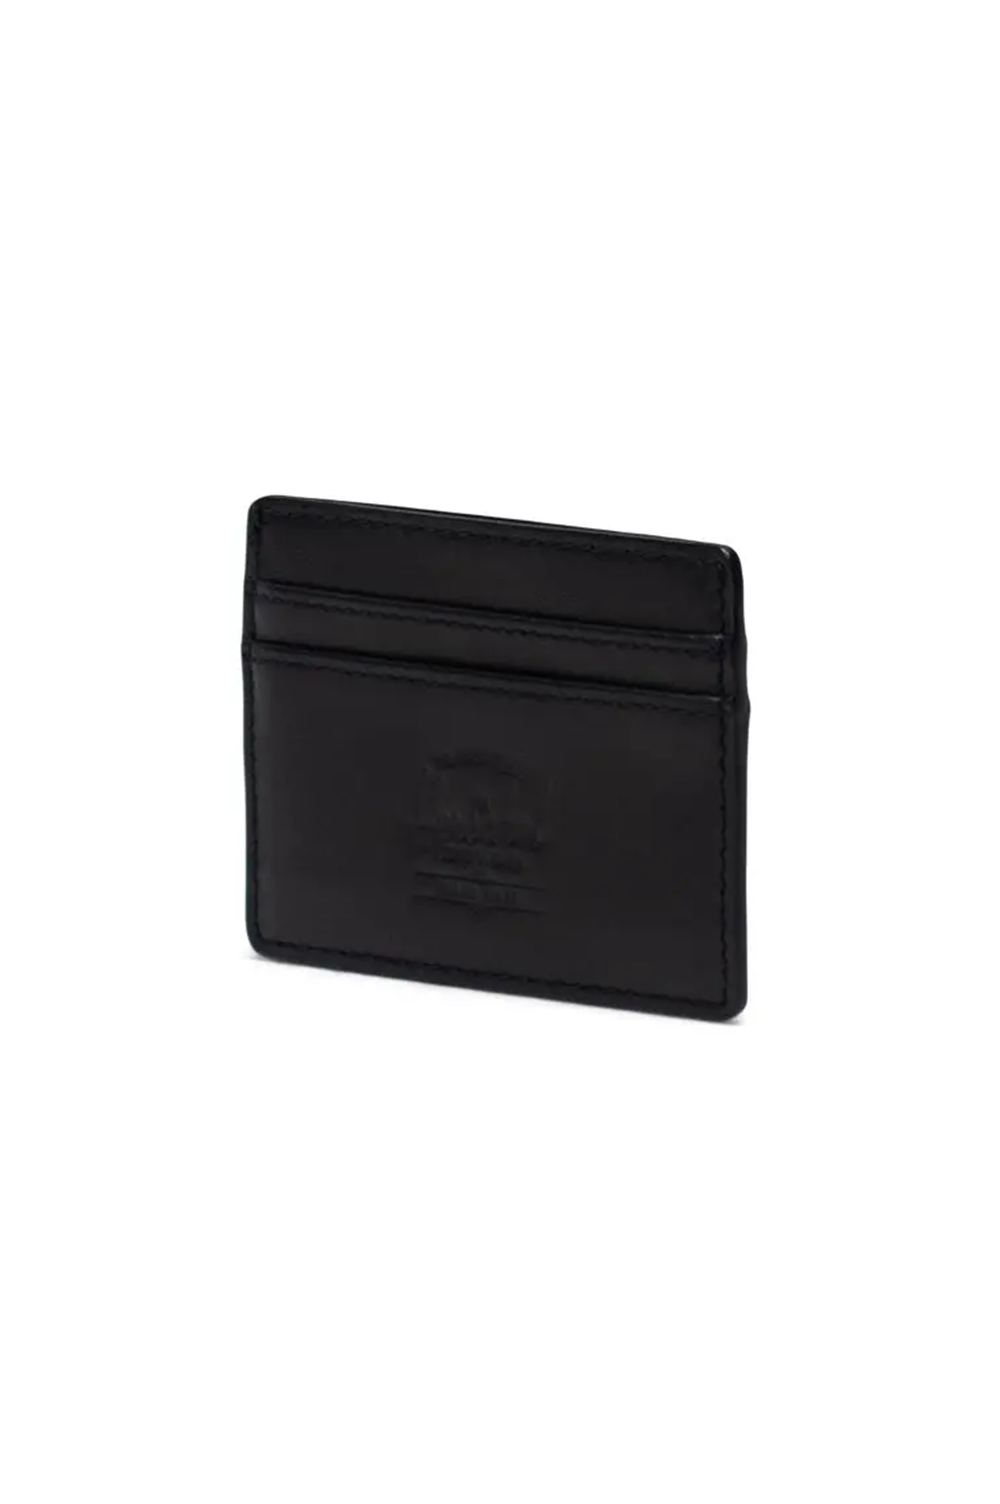 Herschel Supply Co Charlie Leather Cardholder Wallet